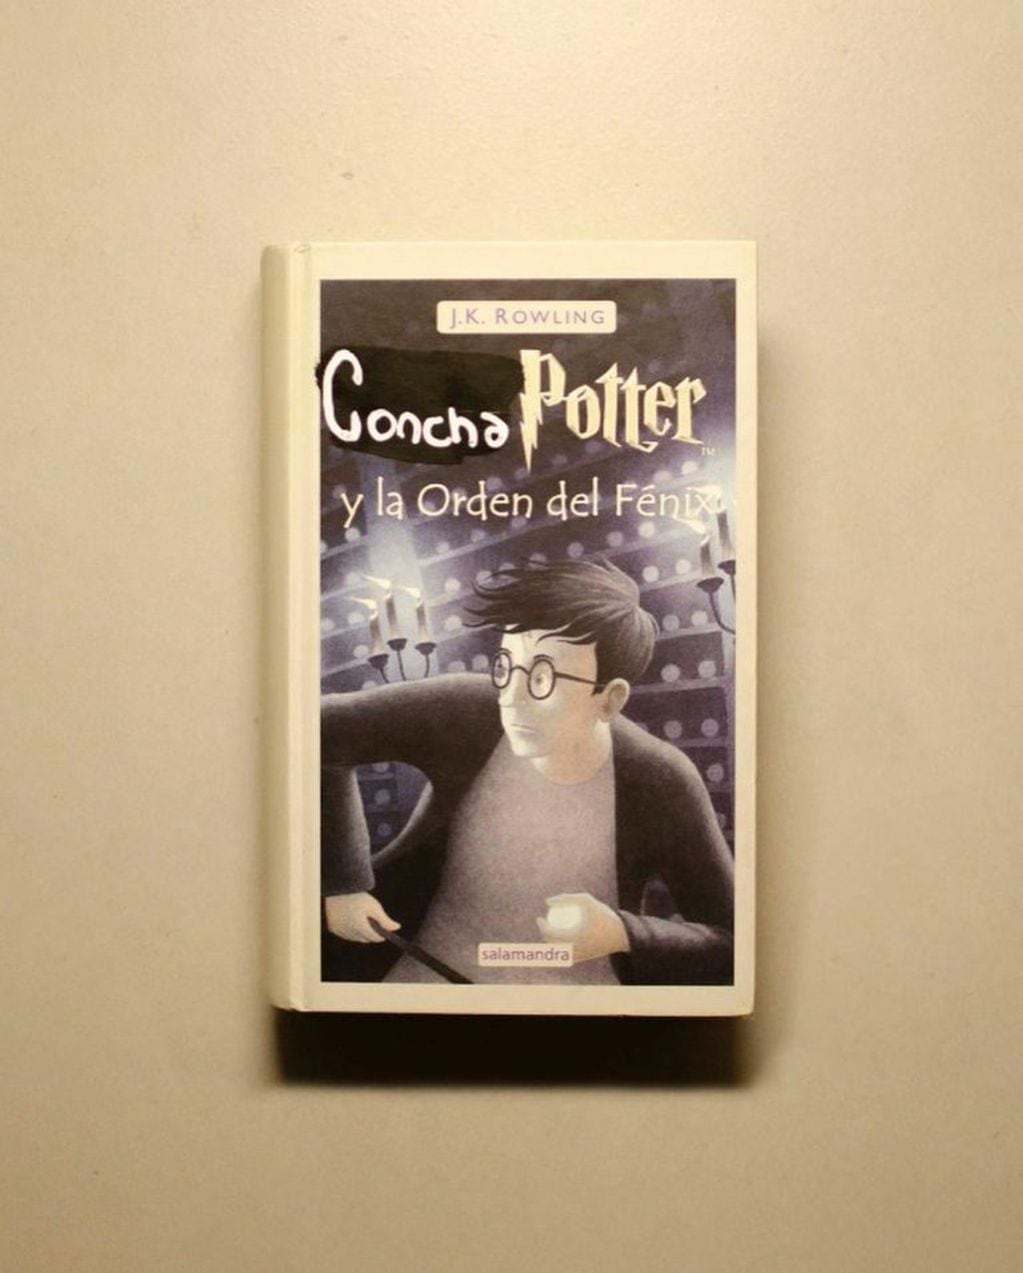 Santiago Maratea lanzó una colección de libros llamada "Concha Potter" y los haters lo criticaron